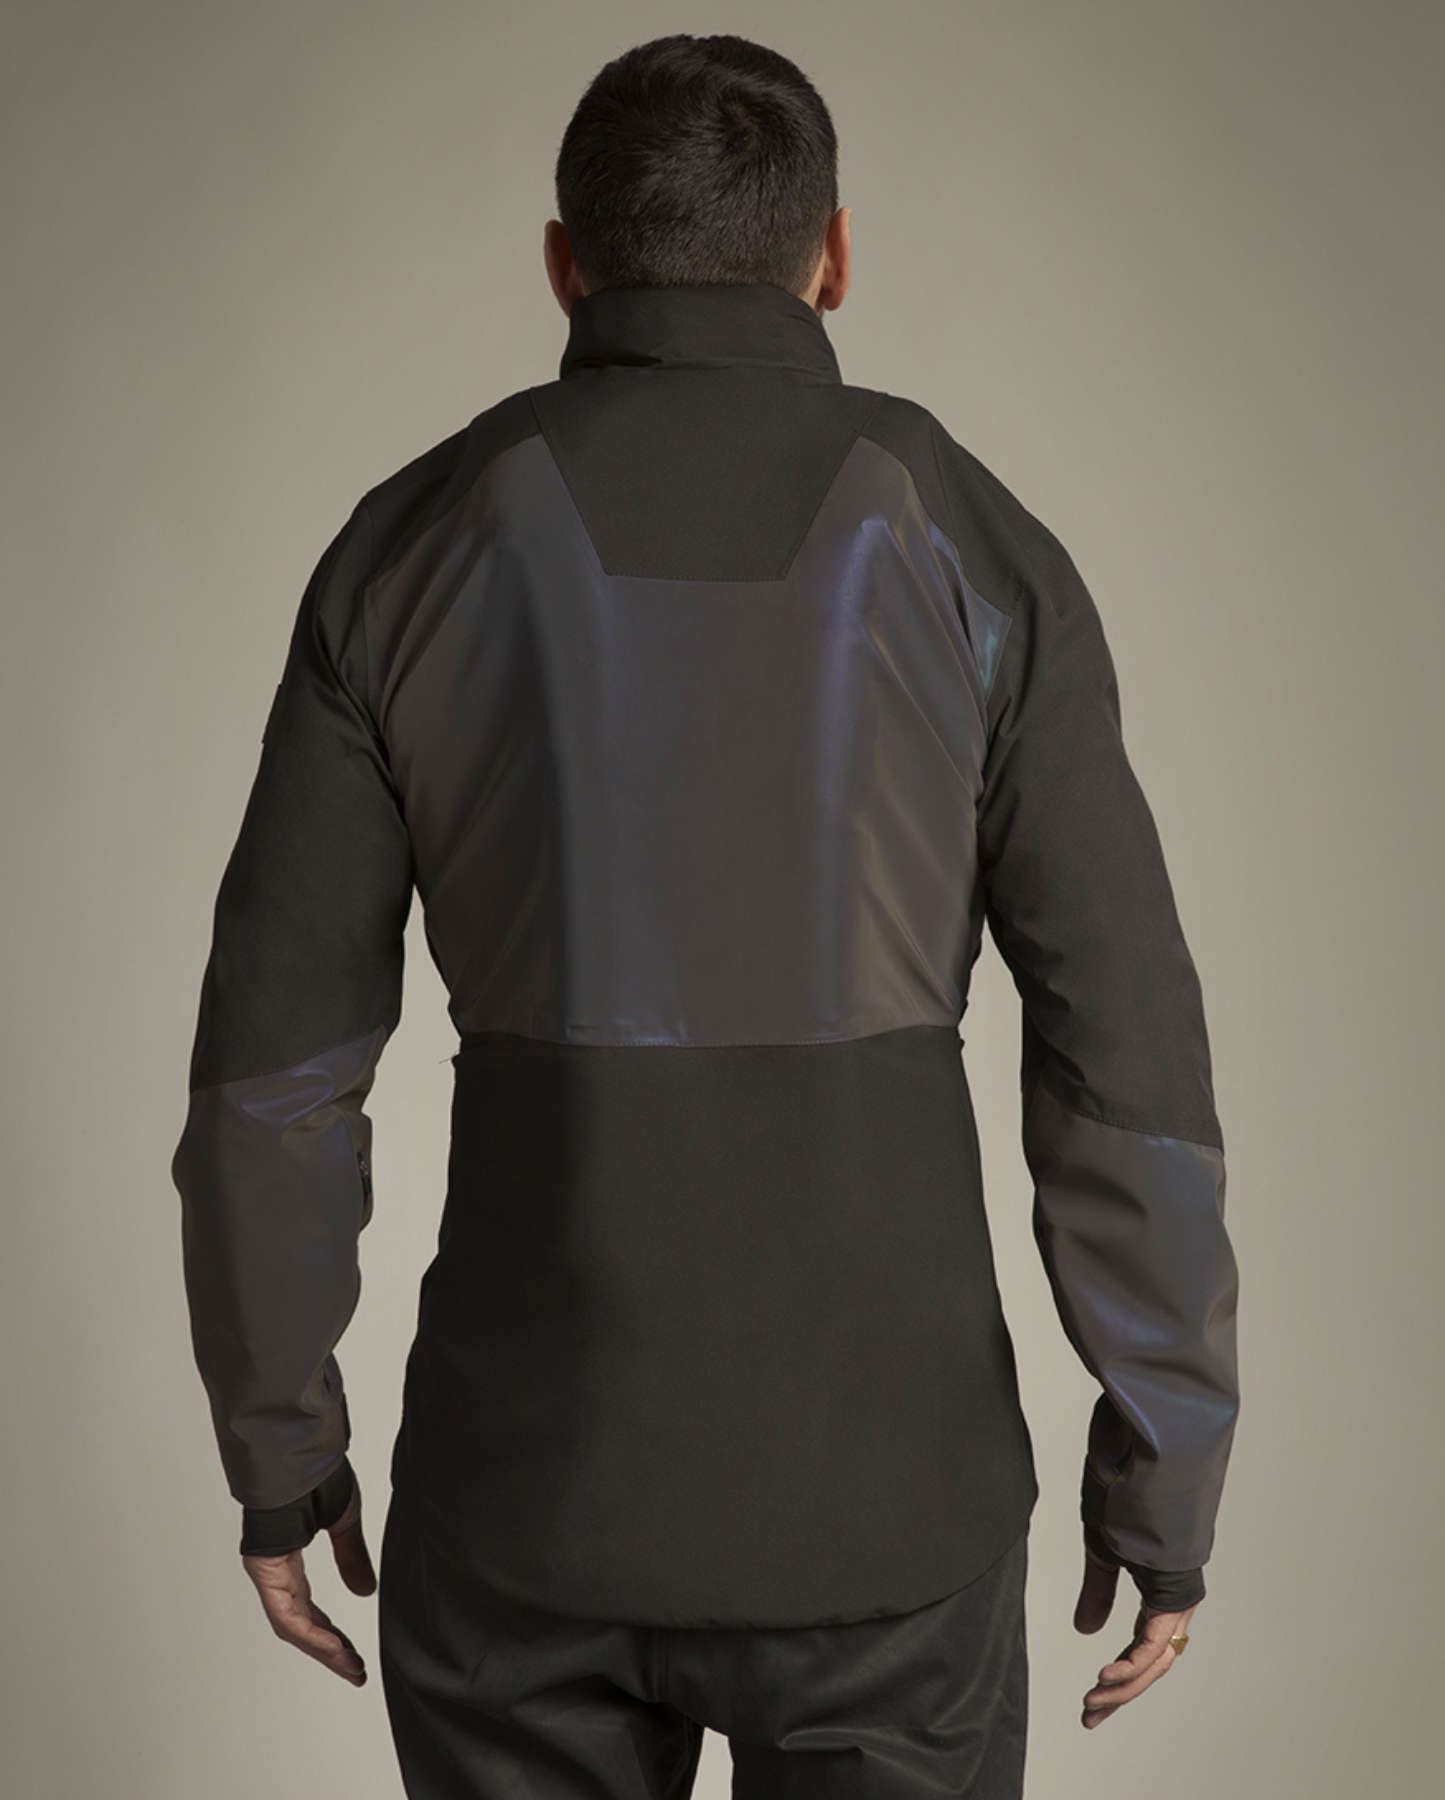 veste airbag pour vélo protection dorsale